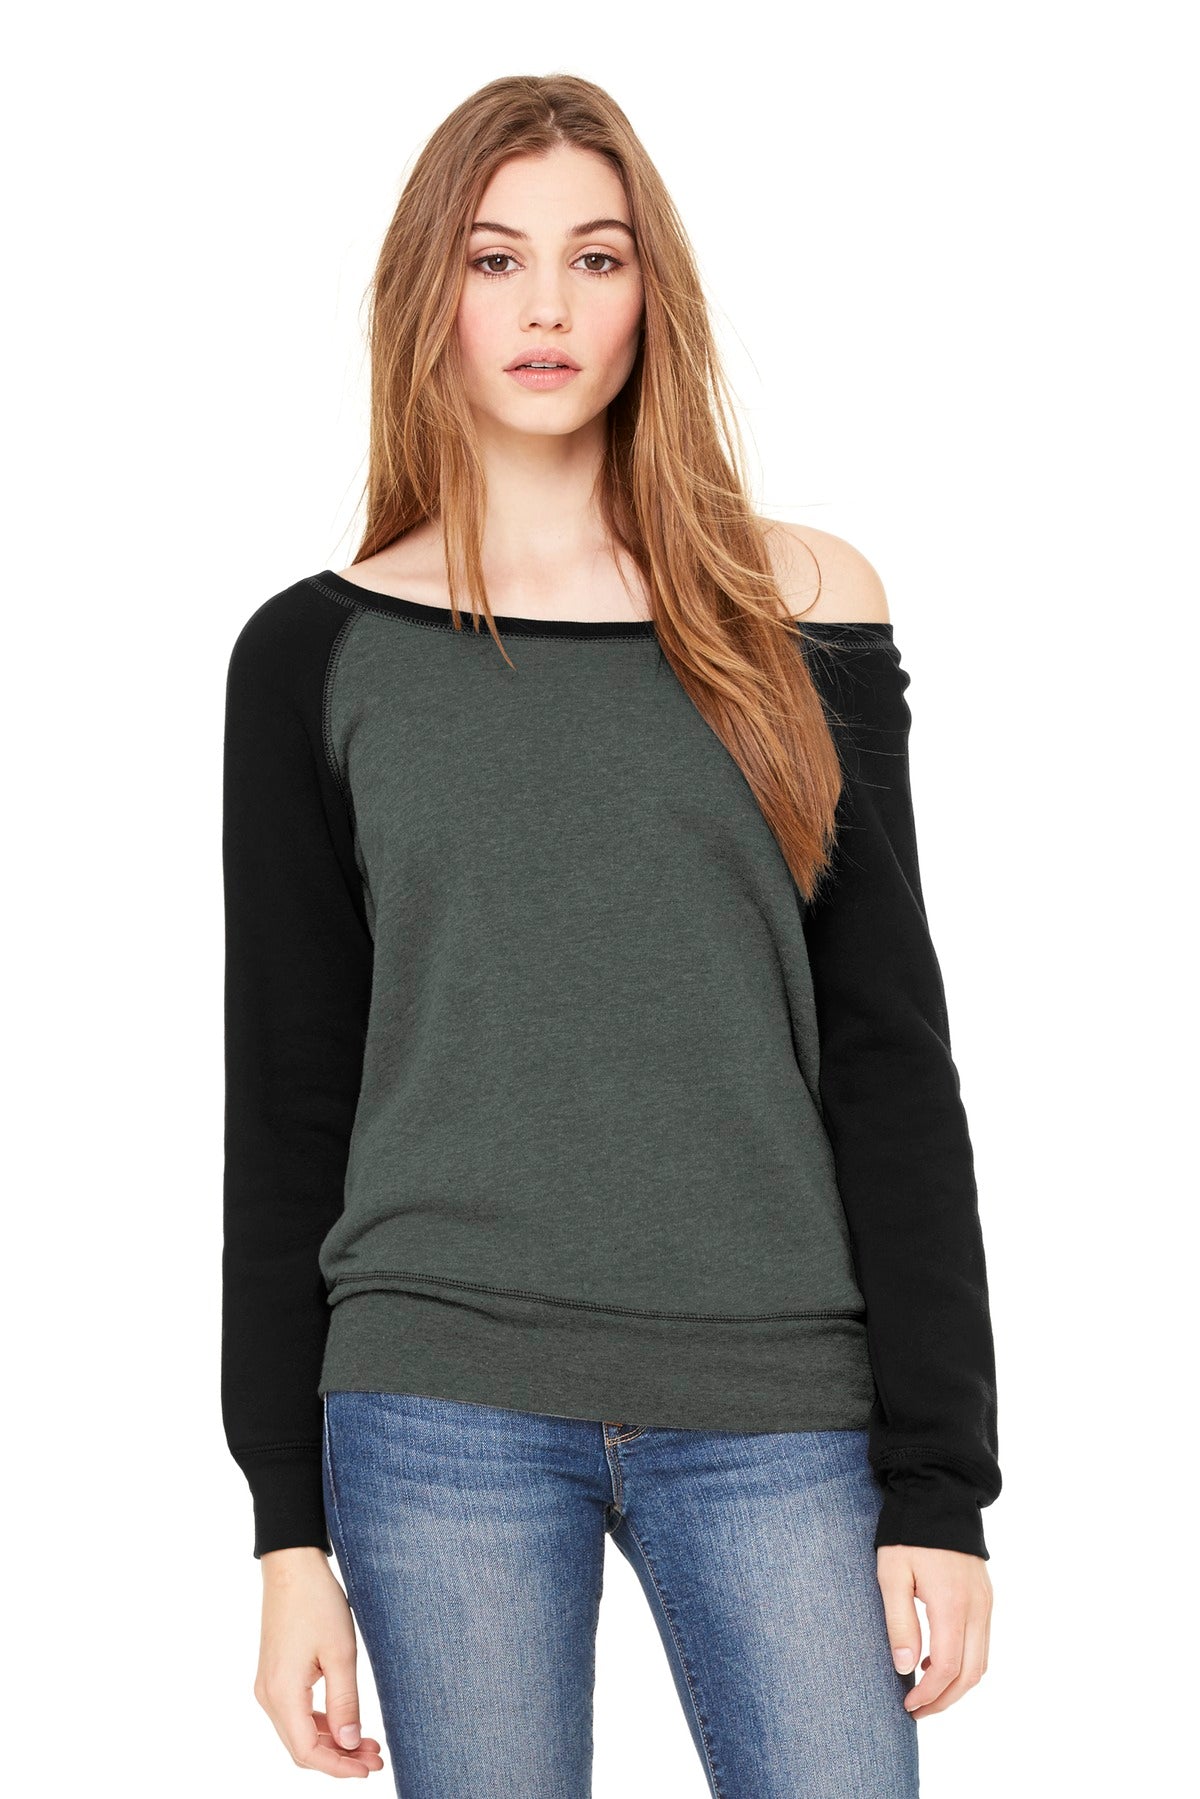 BELLA+CANVAS ® Women's Sponge Fleece Wide-Neck Sweatshirt. BC7501